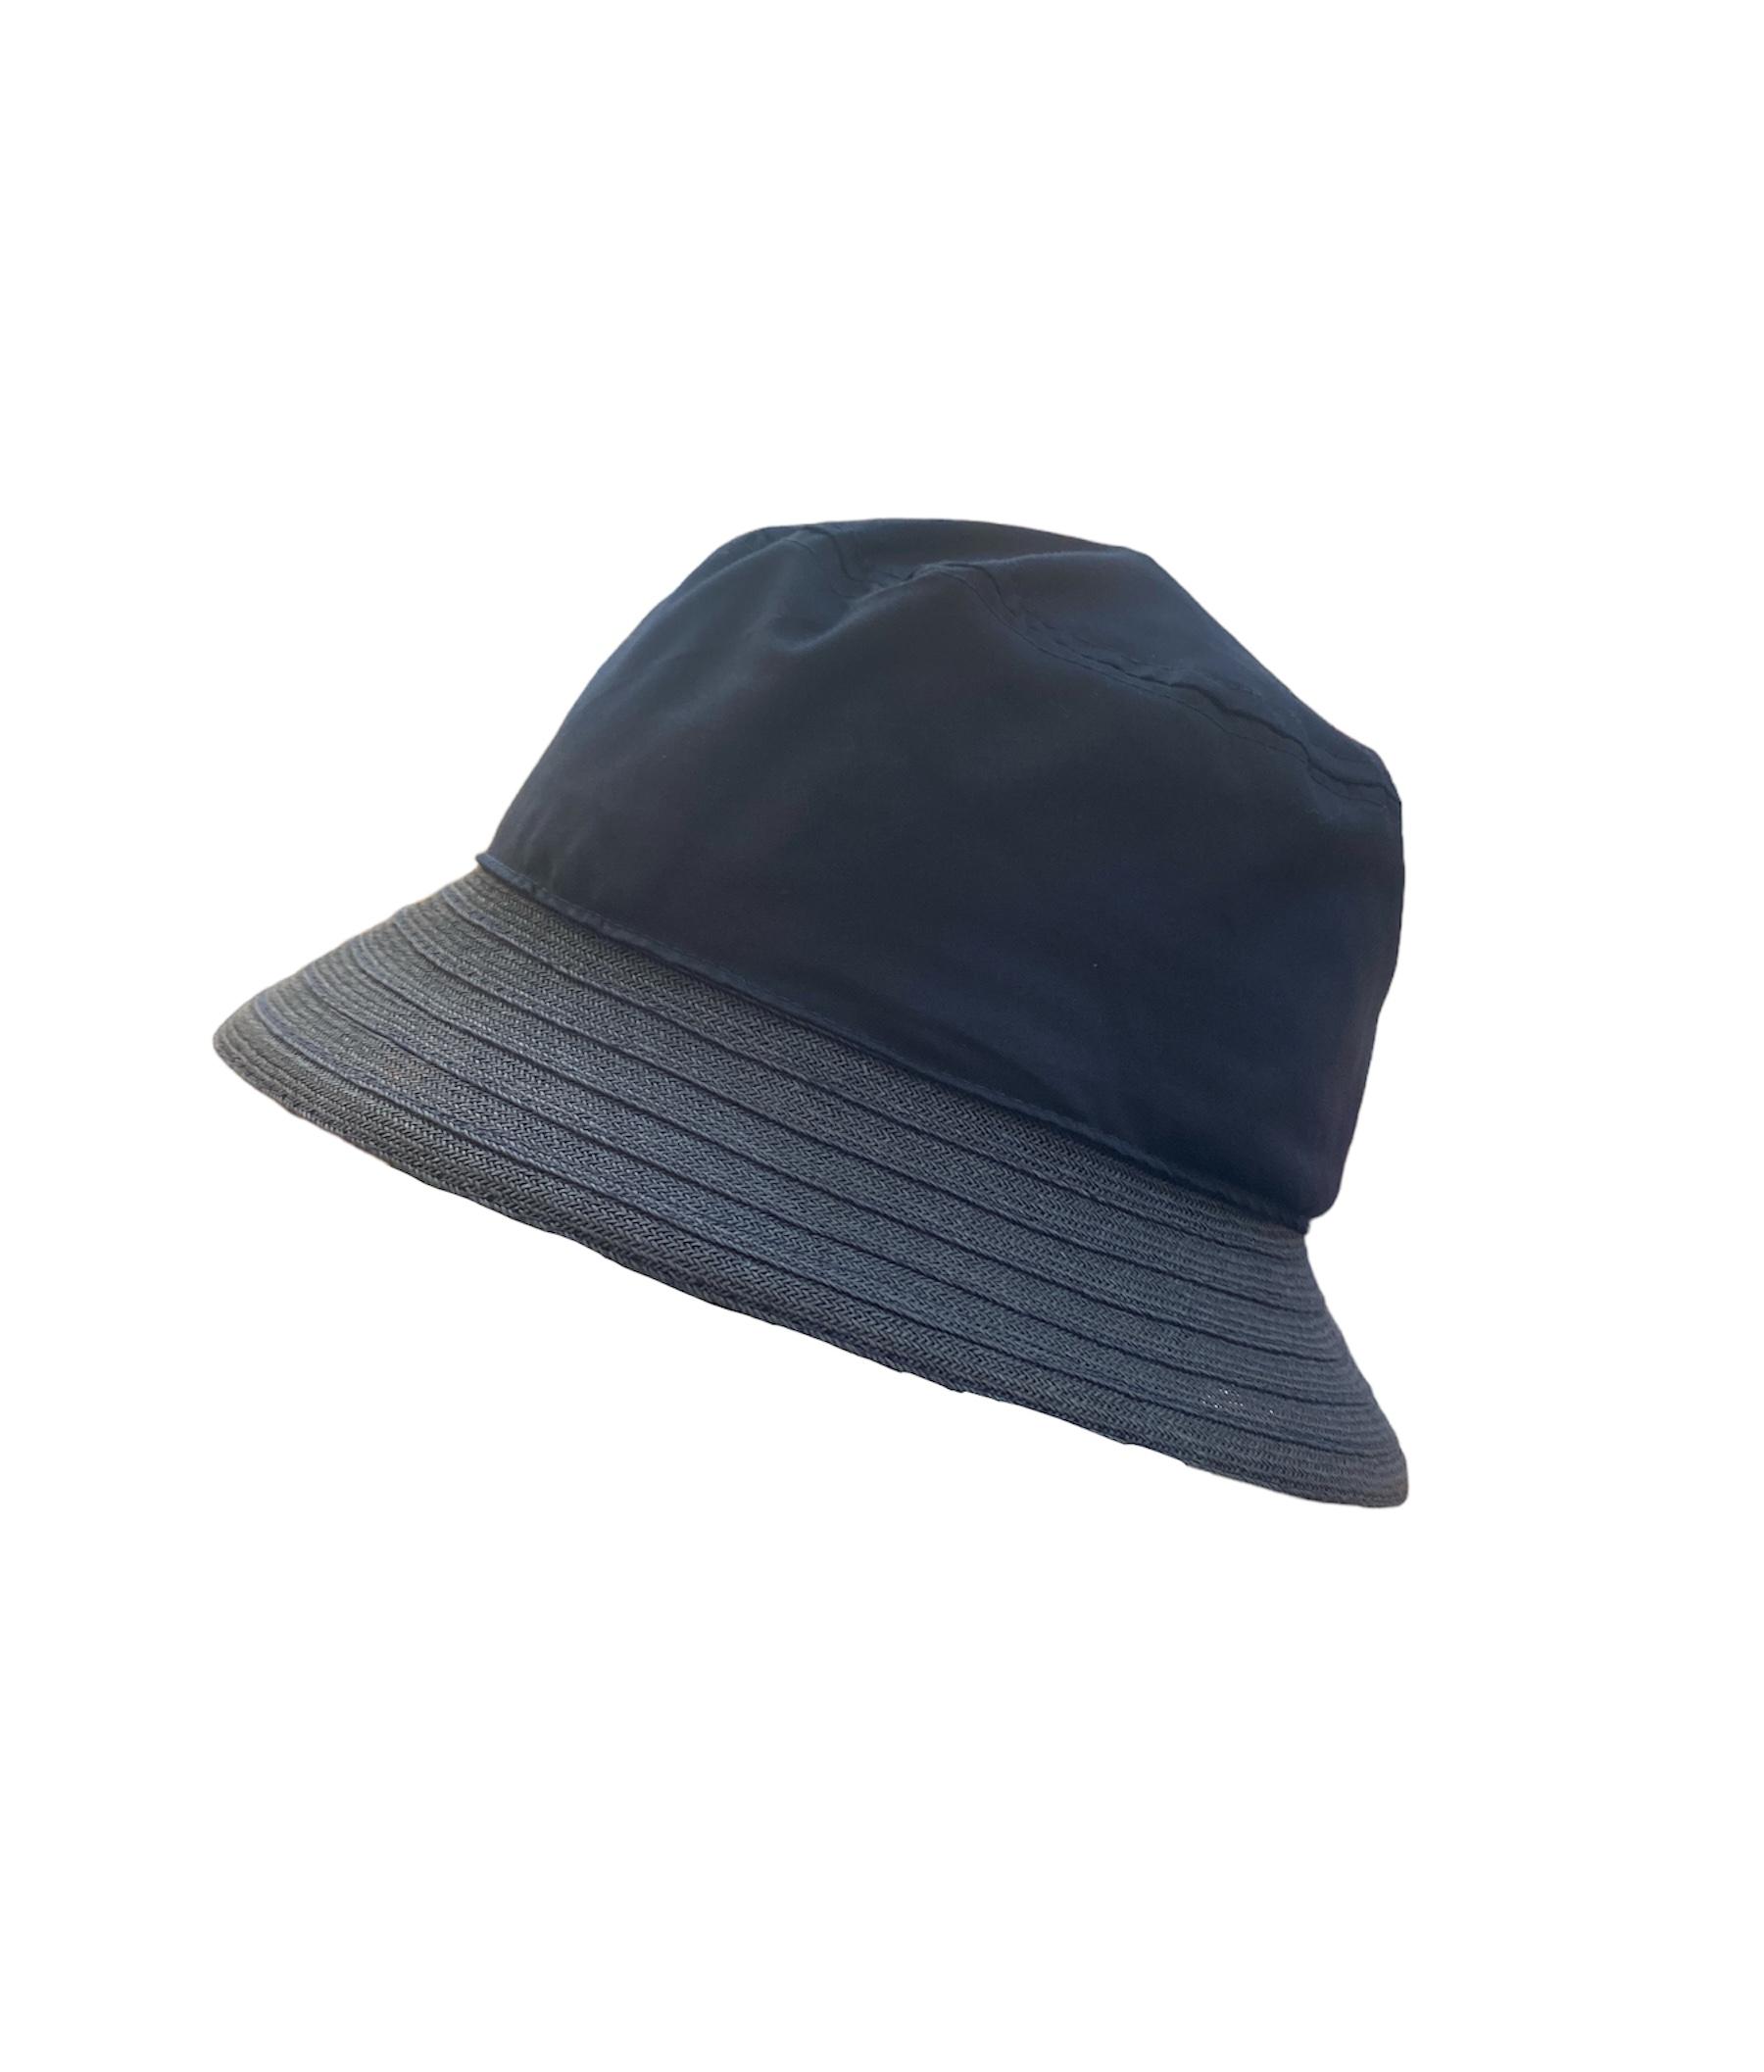 Chapeau de soleil Seeberger bleu marine, disponible en taille unique